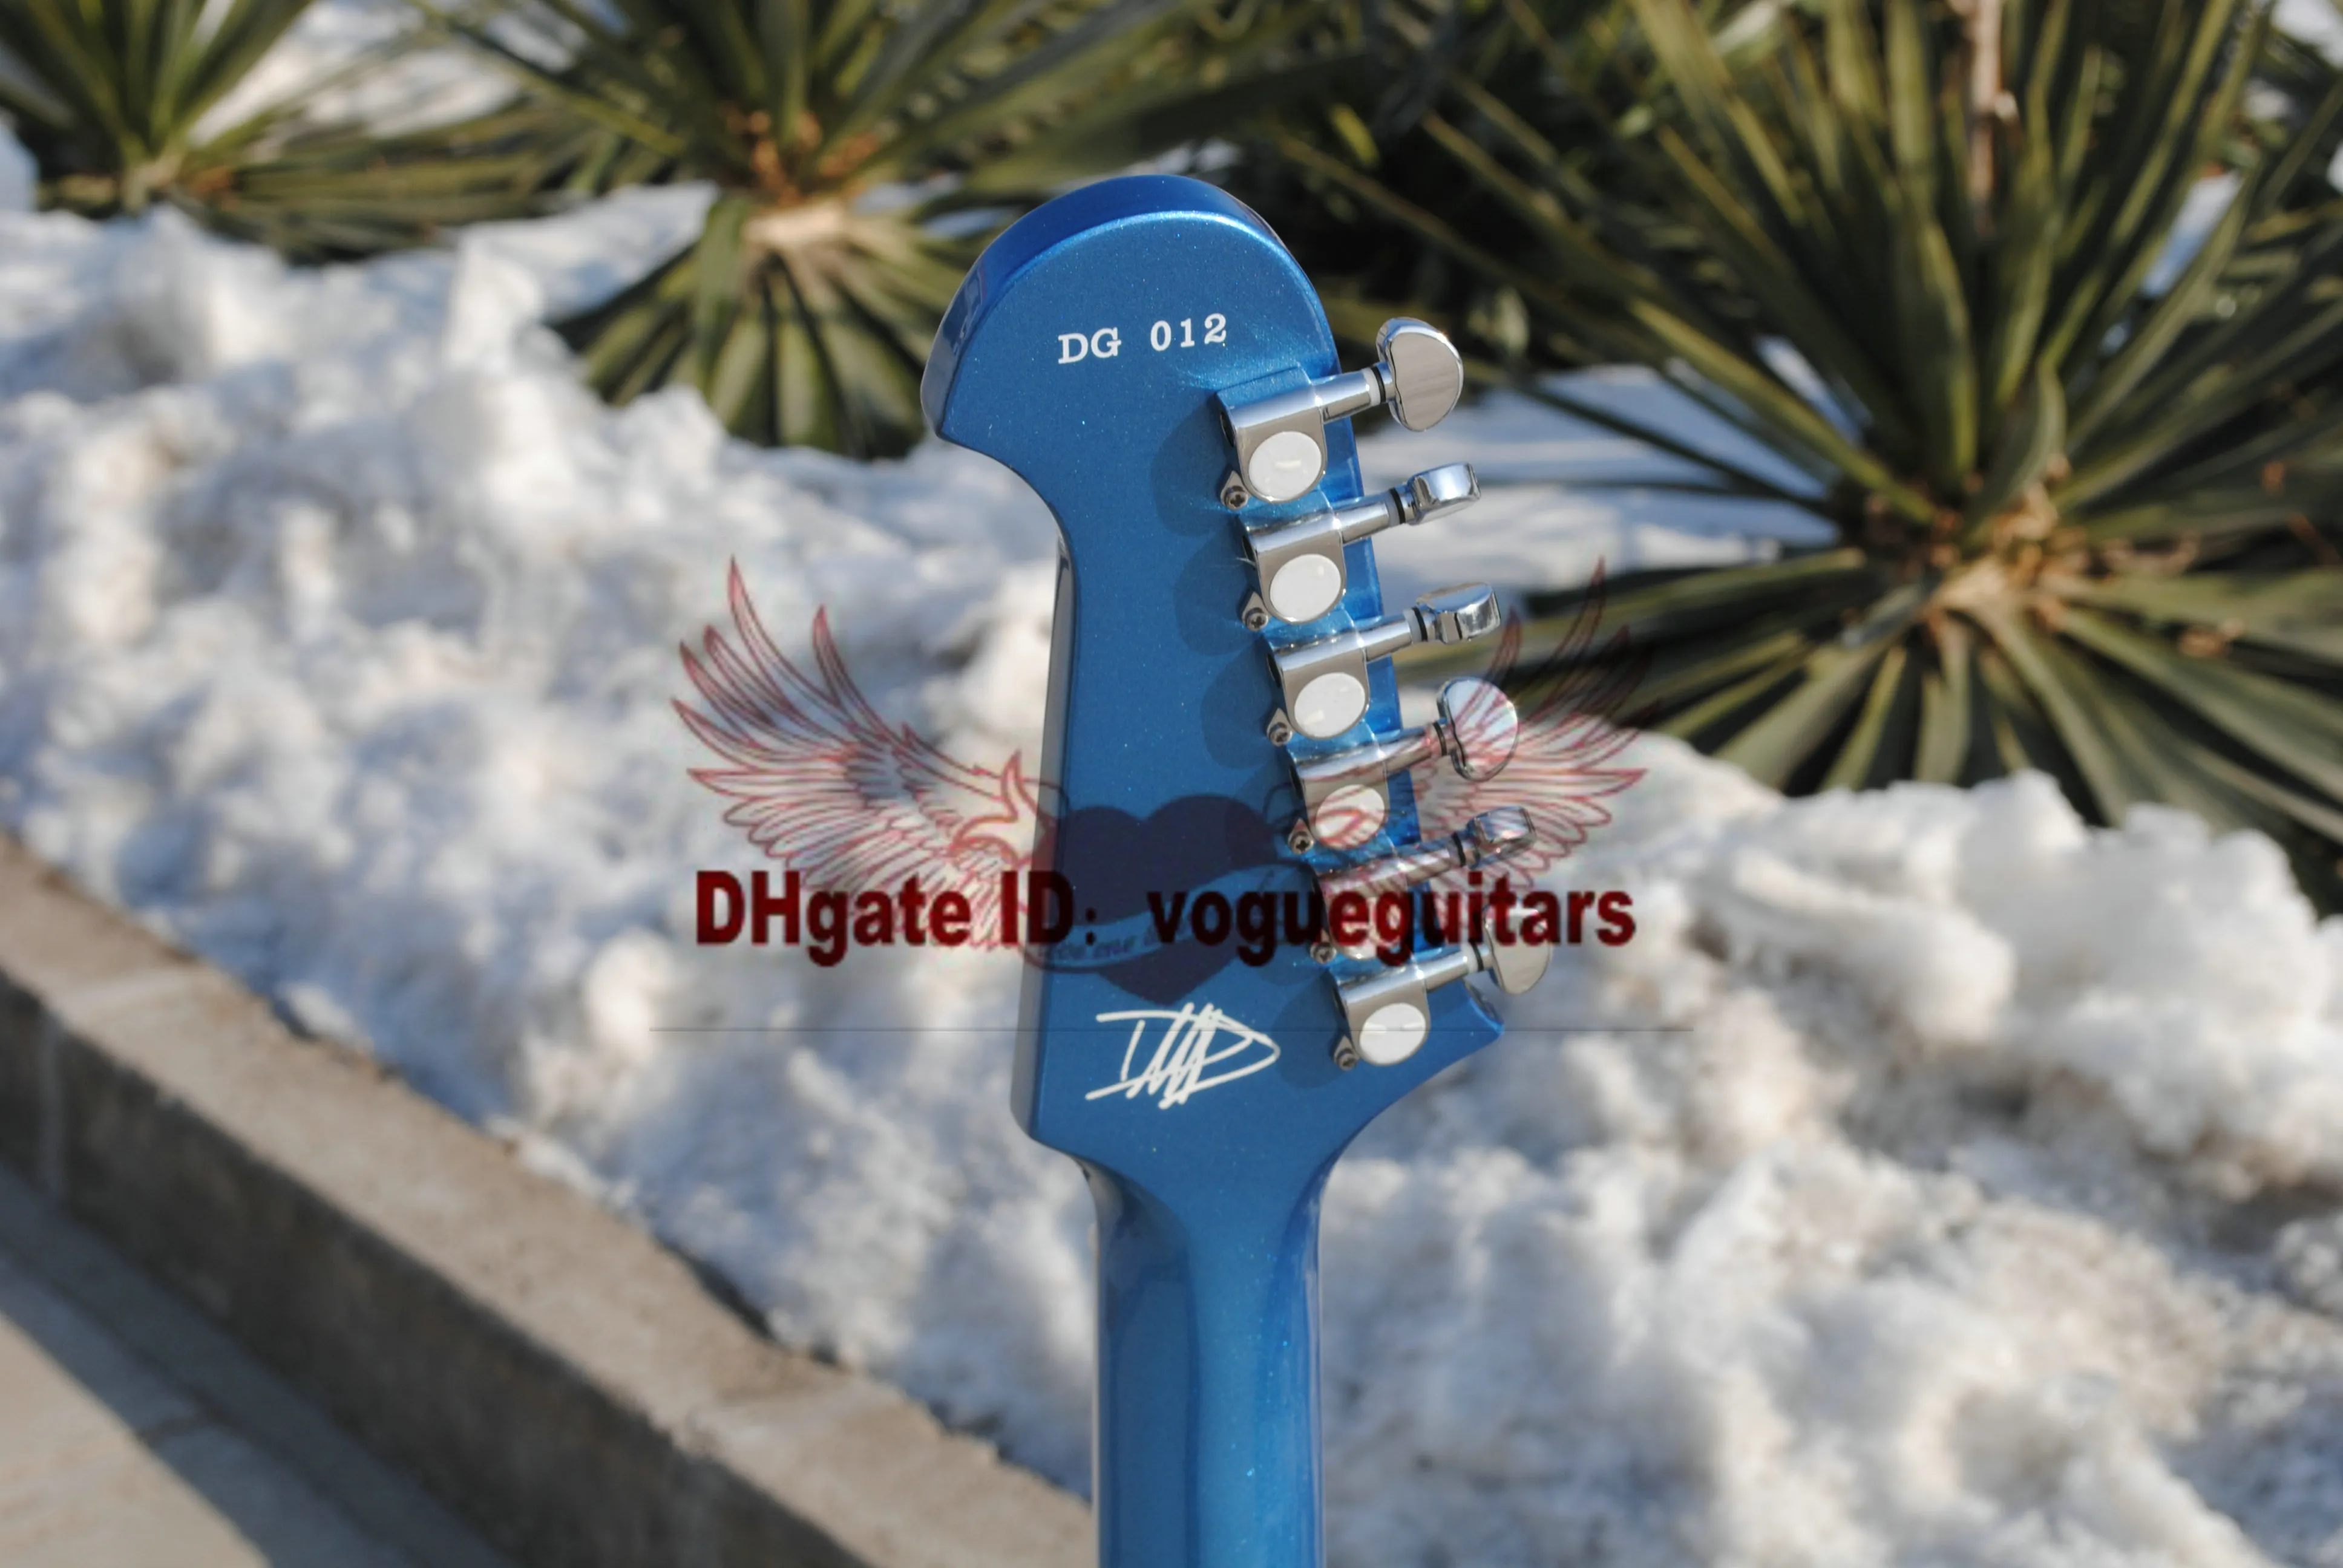 Atacado e varejo personalizado Guitarra Elétrica com tremolo Em Azul de Alta Qualidade Frete Grátis de acordo com cor personalizada pedido